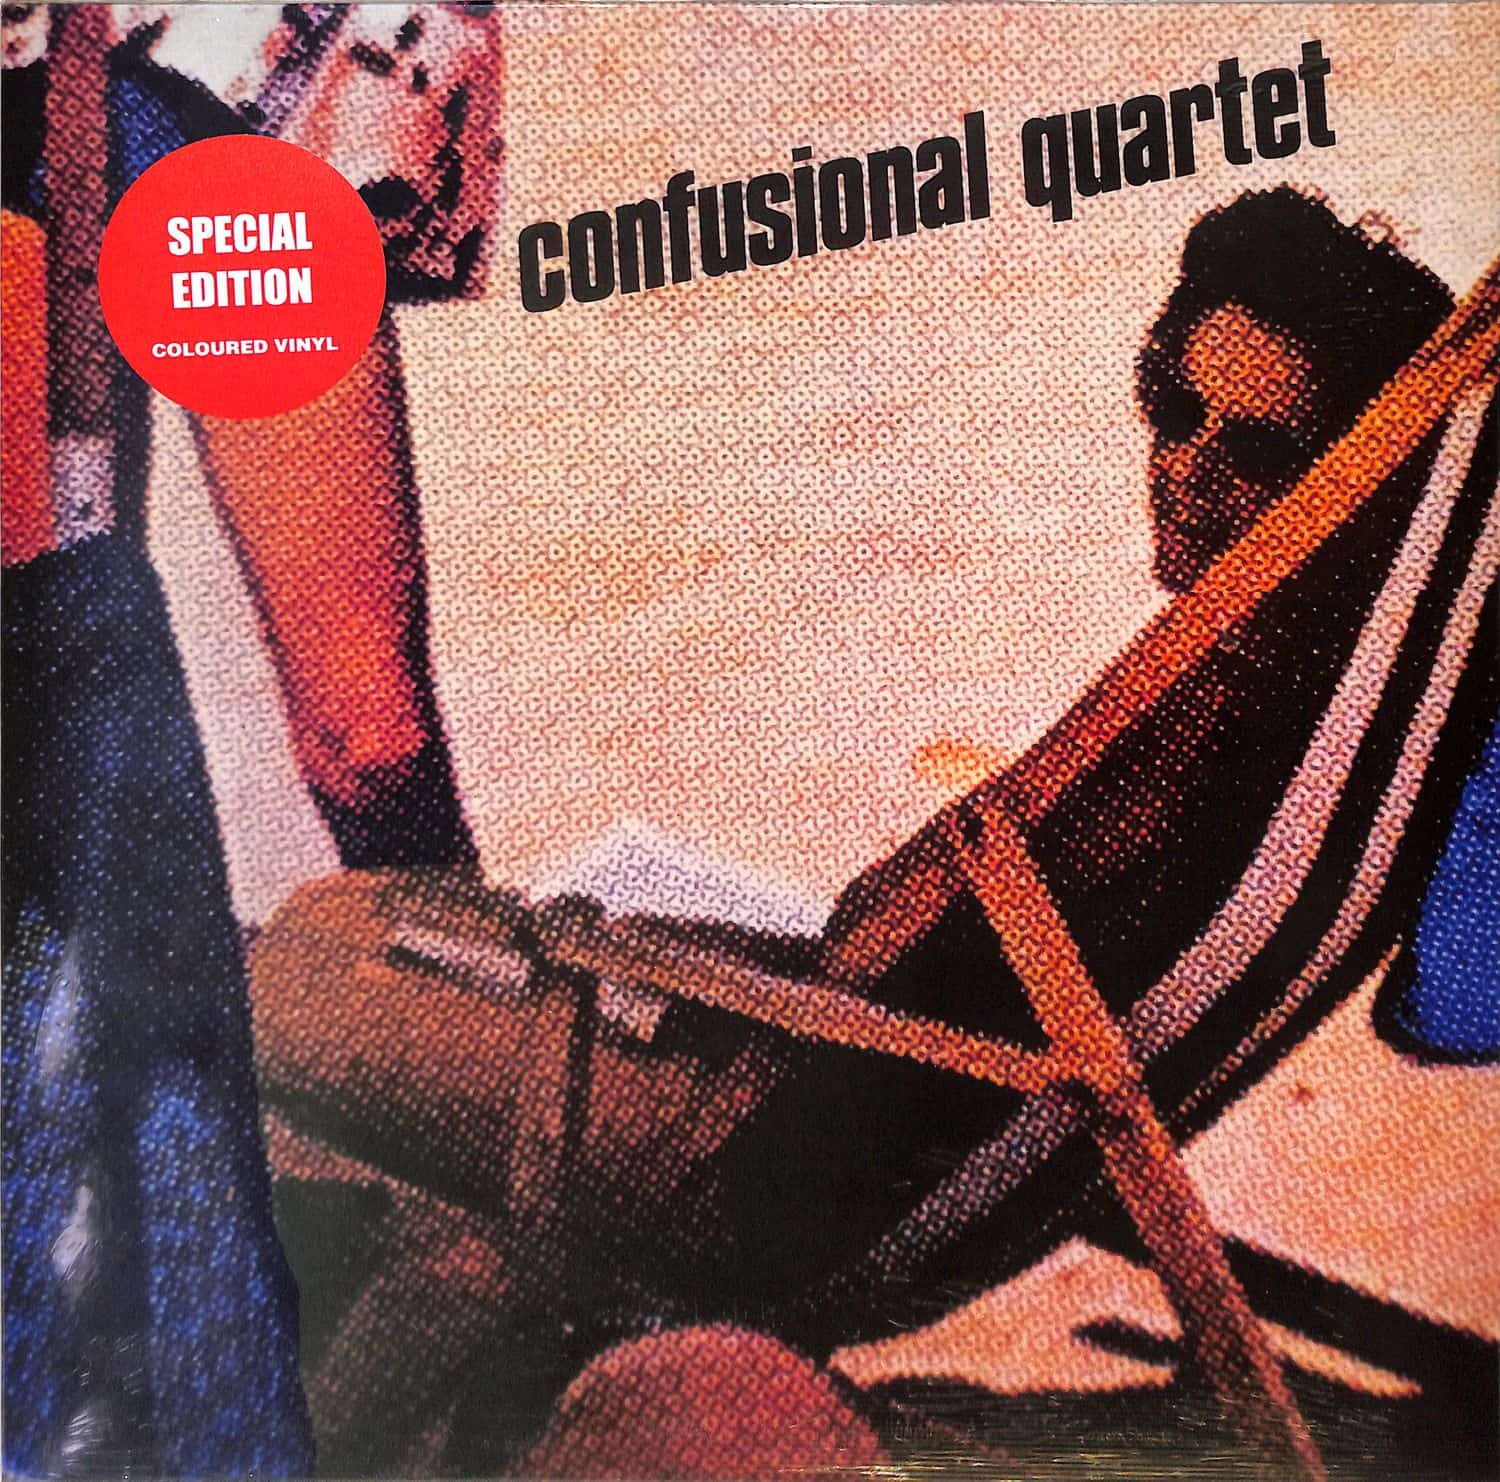 Confusional Quartet - CONFUSIONAL QUARTET 